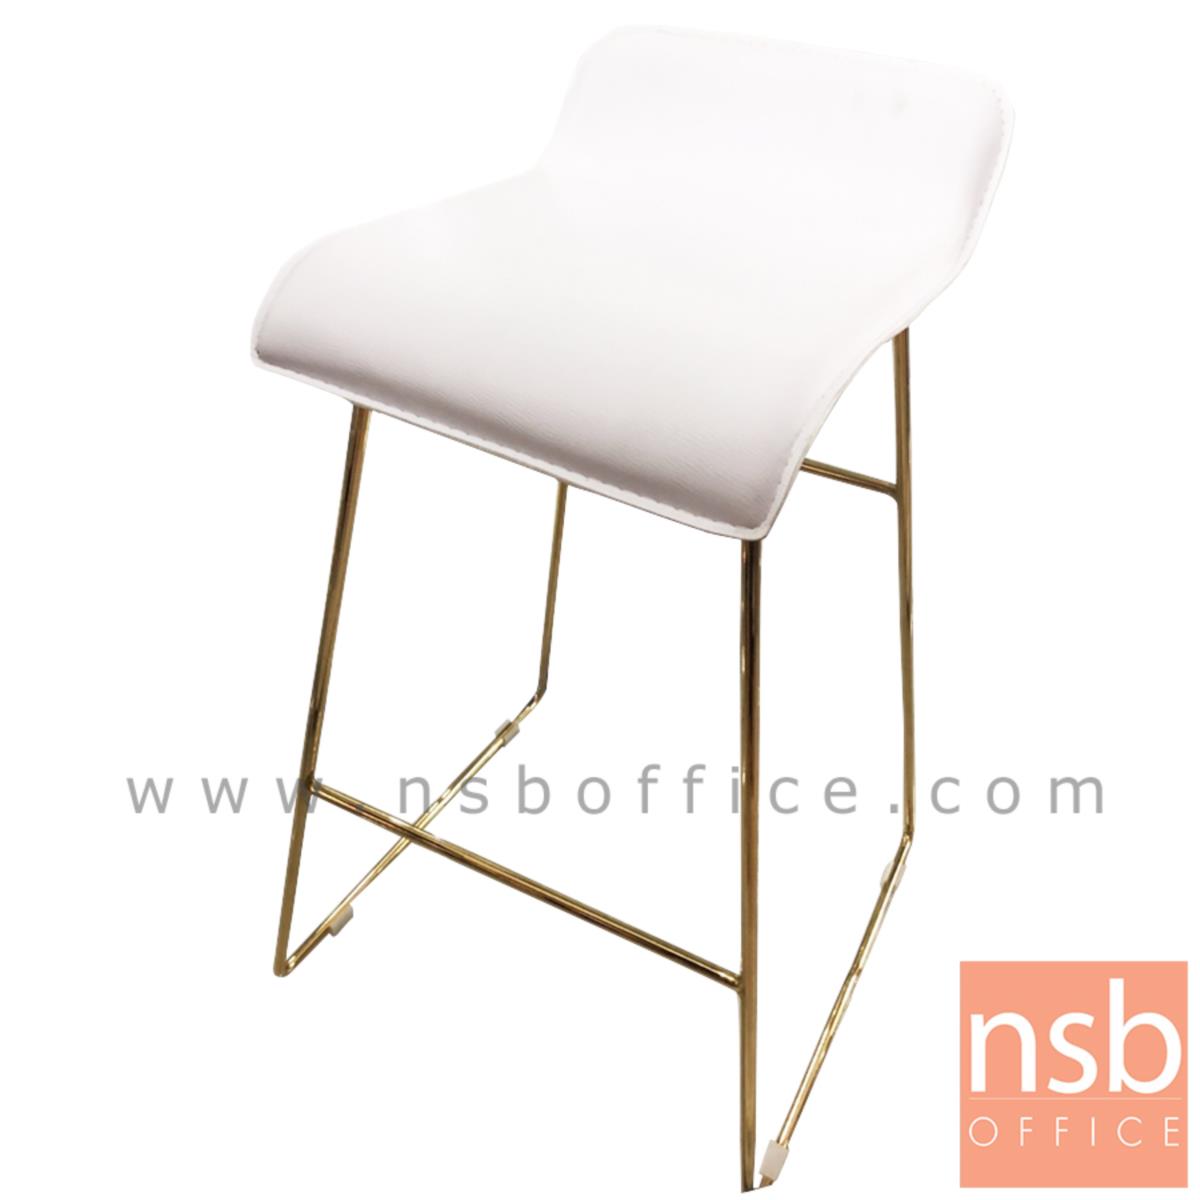 B18A079:เก้าอี้บาร์ ที่นั่งหุ้มหนังเทียม รุ่น Marigold (แมริโกลด์)  โครงขาเหล็กชุบทอง